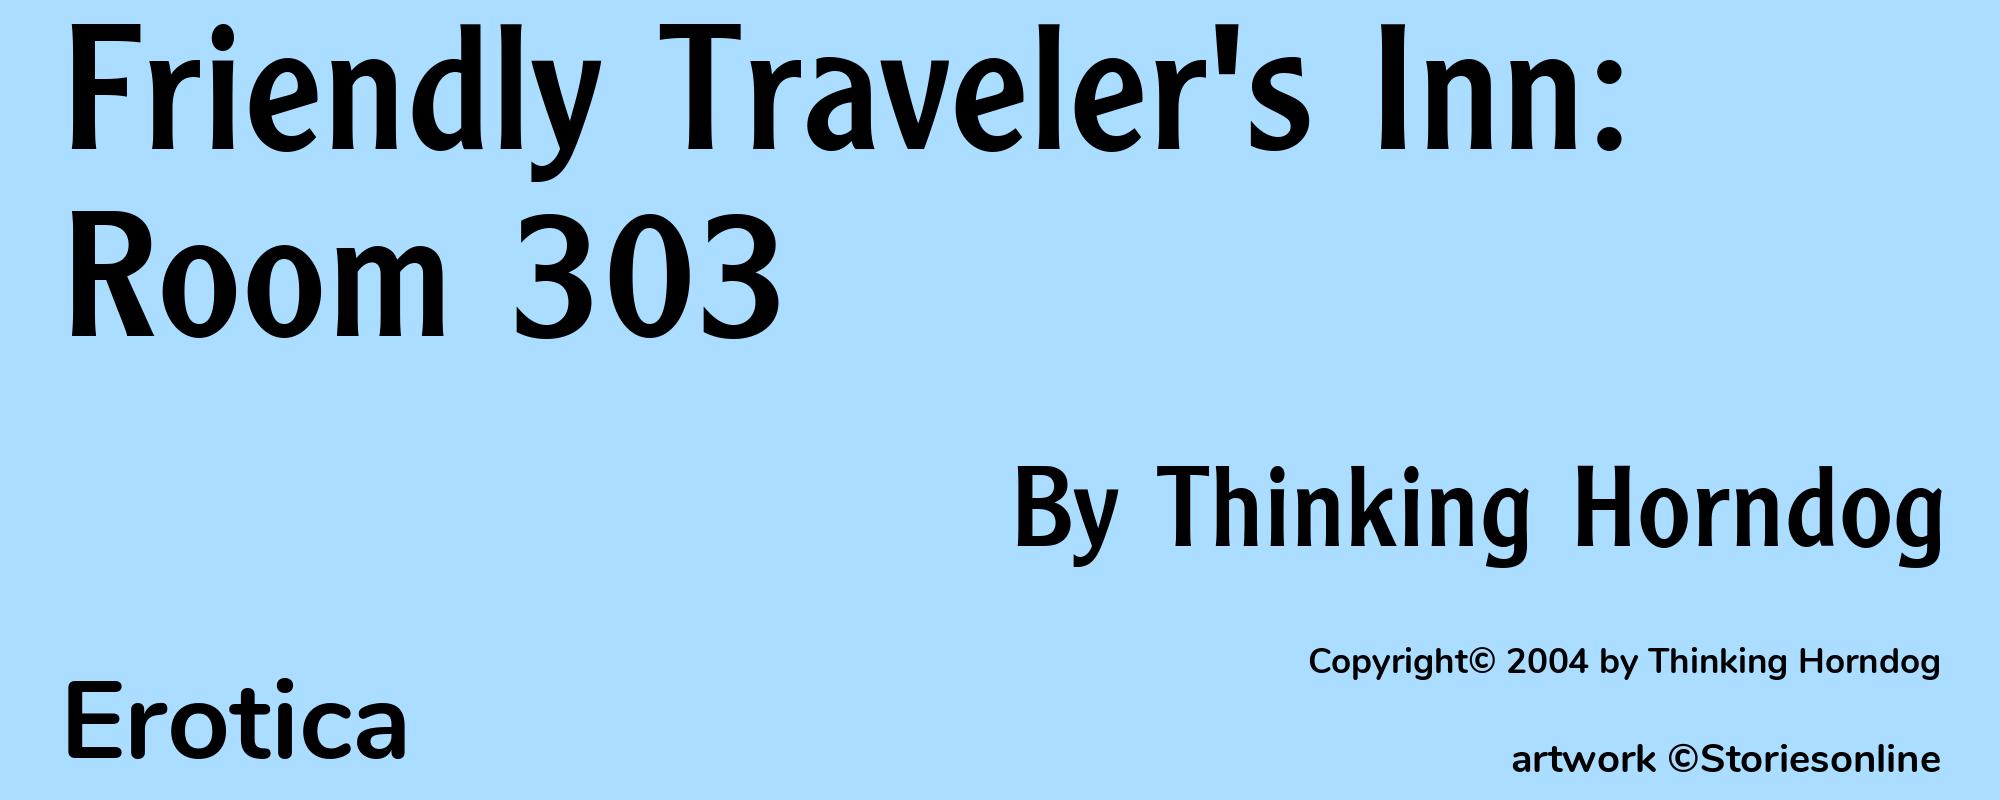 Friendly Traveler's Inn: Room 303 - Cover